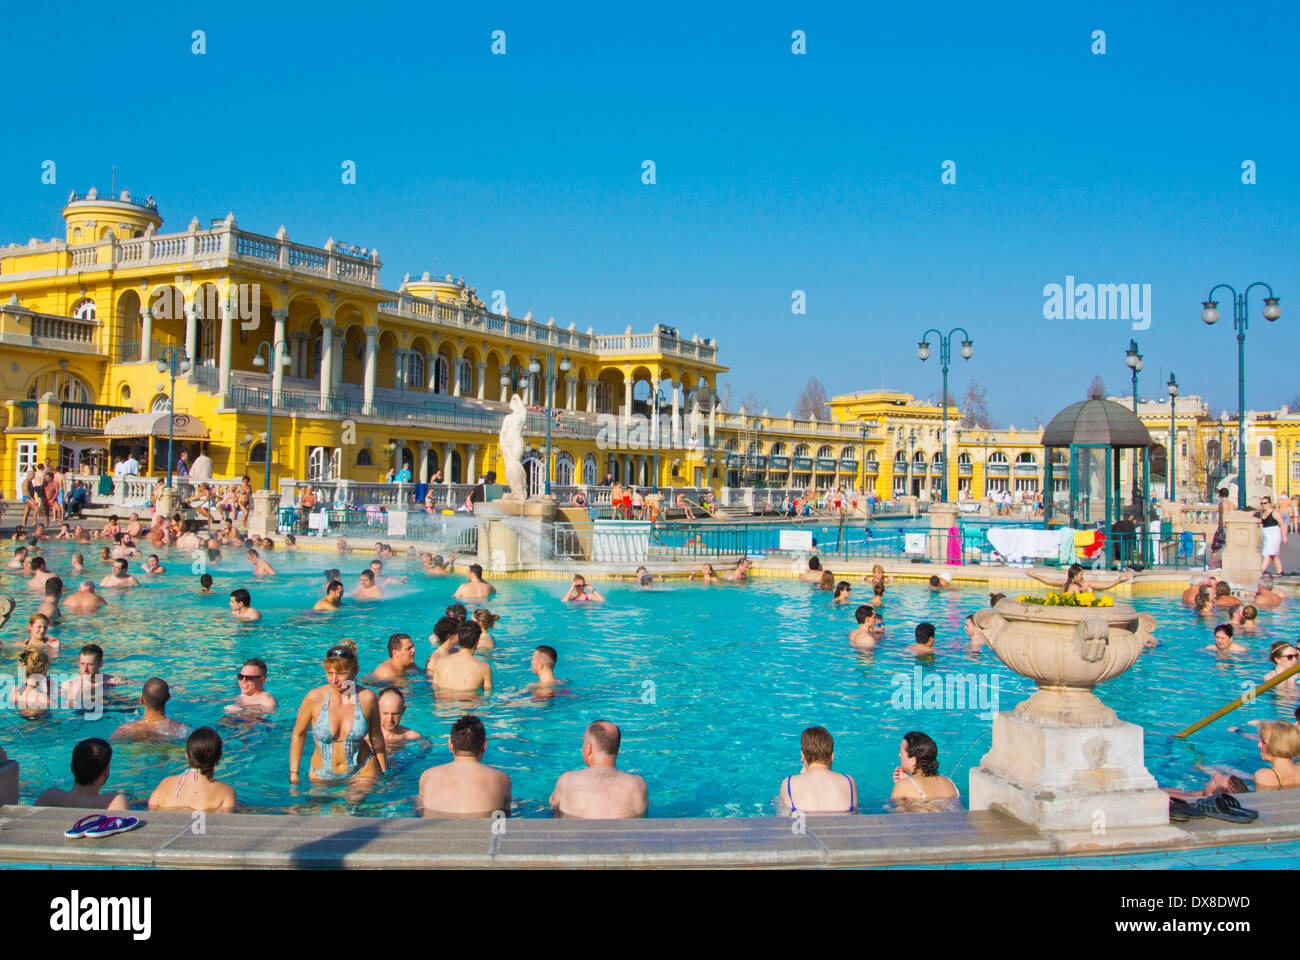 Piscinas termales al aire libre, Szechenyi furdo spa, Varosliget el parque de la ciudad, Budapest, Hungría, Europa Foto de stock